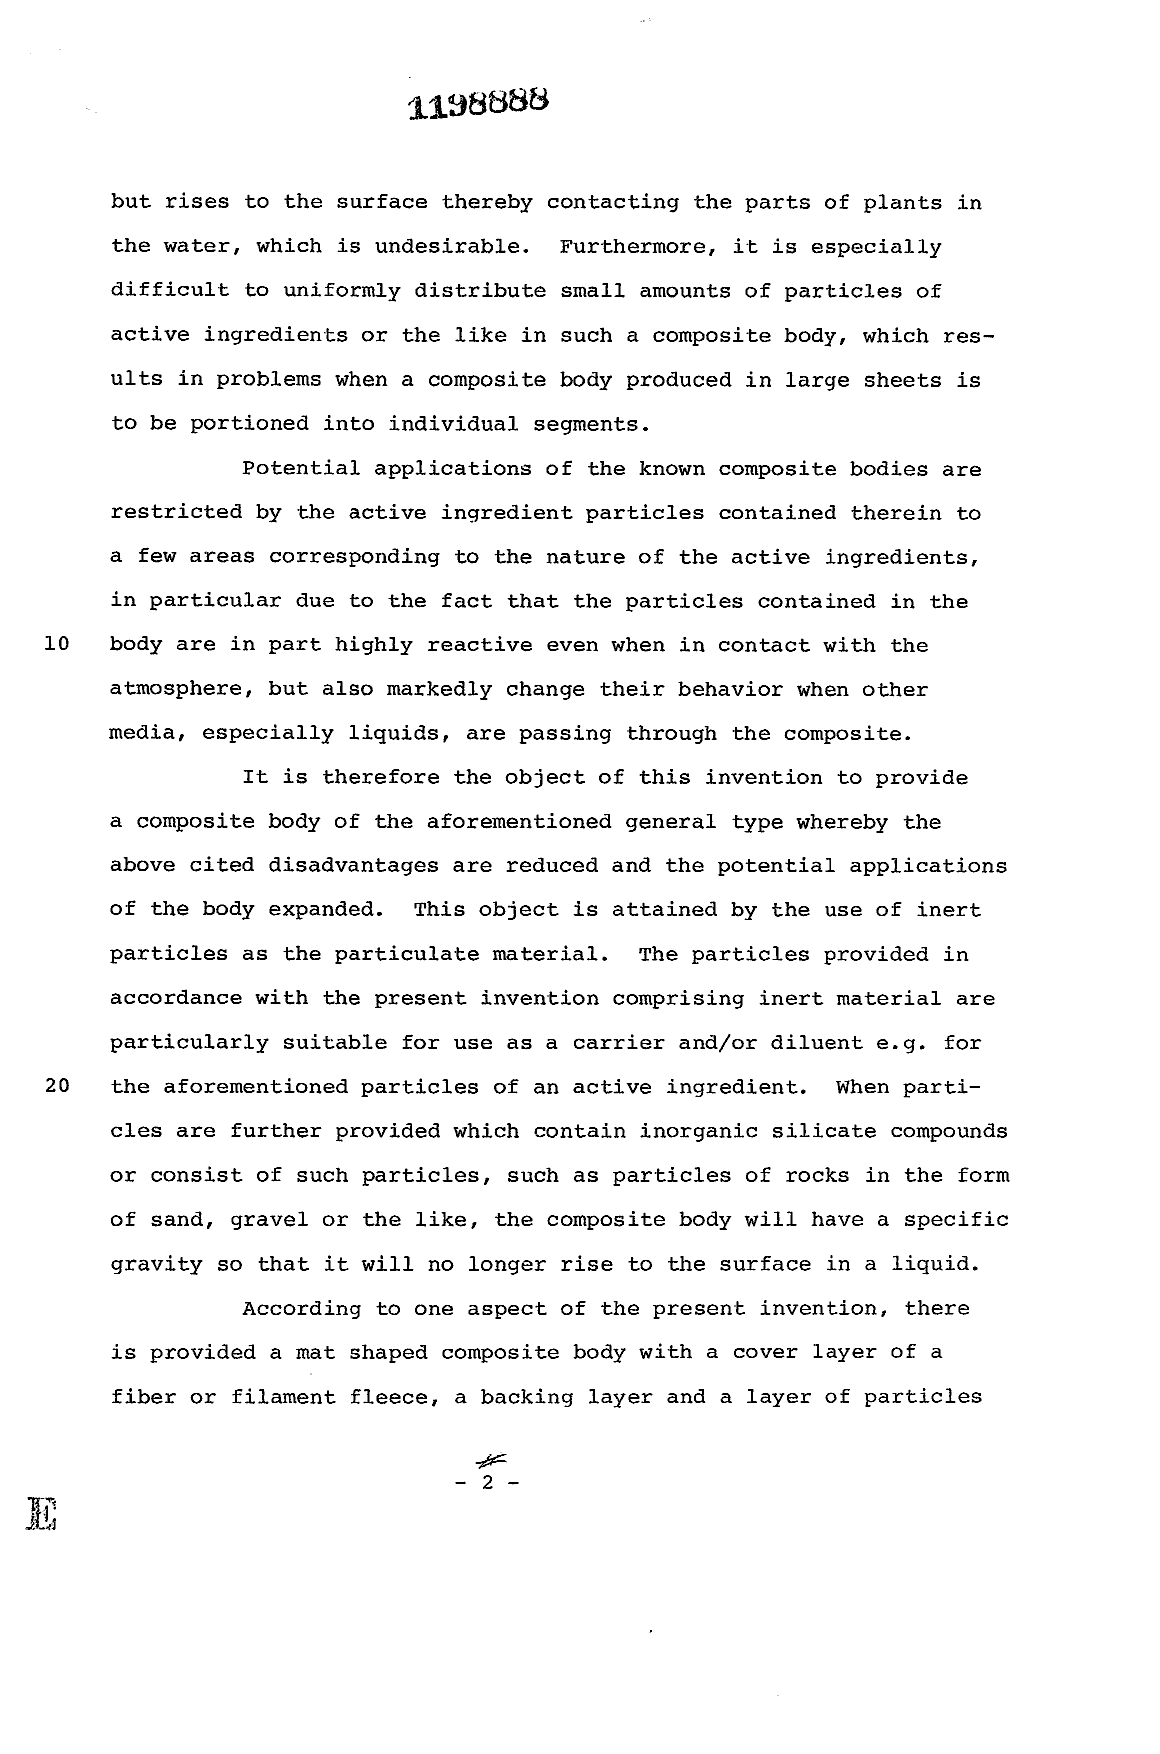 Canadian Patent Document 1198888. Description 19930622. Image 2 of 17